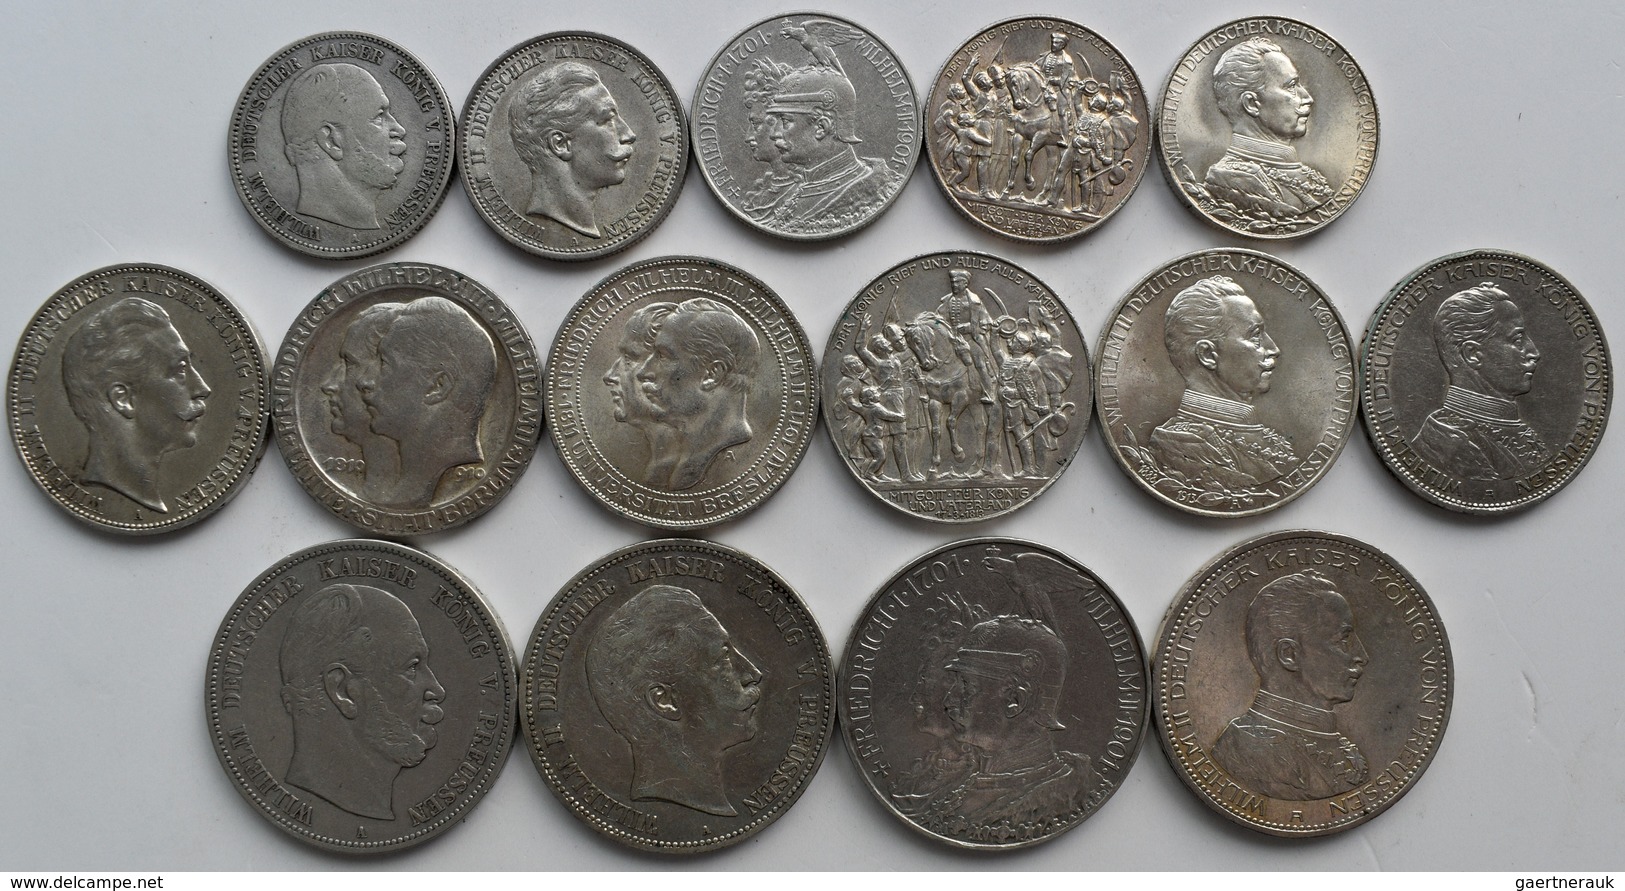 Preußen: Lot 15 Münzen, Dabei 5 X 2 Mark, 6 X 3 Mark Und 4 X 5 Mark Aus Preußen, Jede Münze Anders. - Taler En Doppeltaler